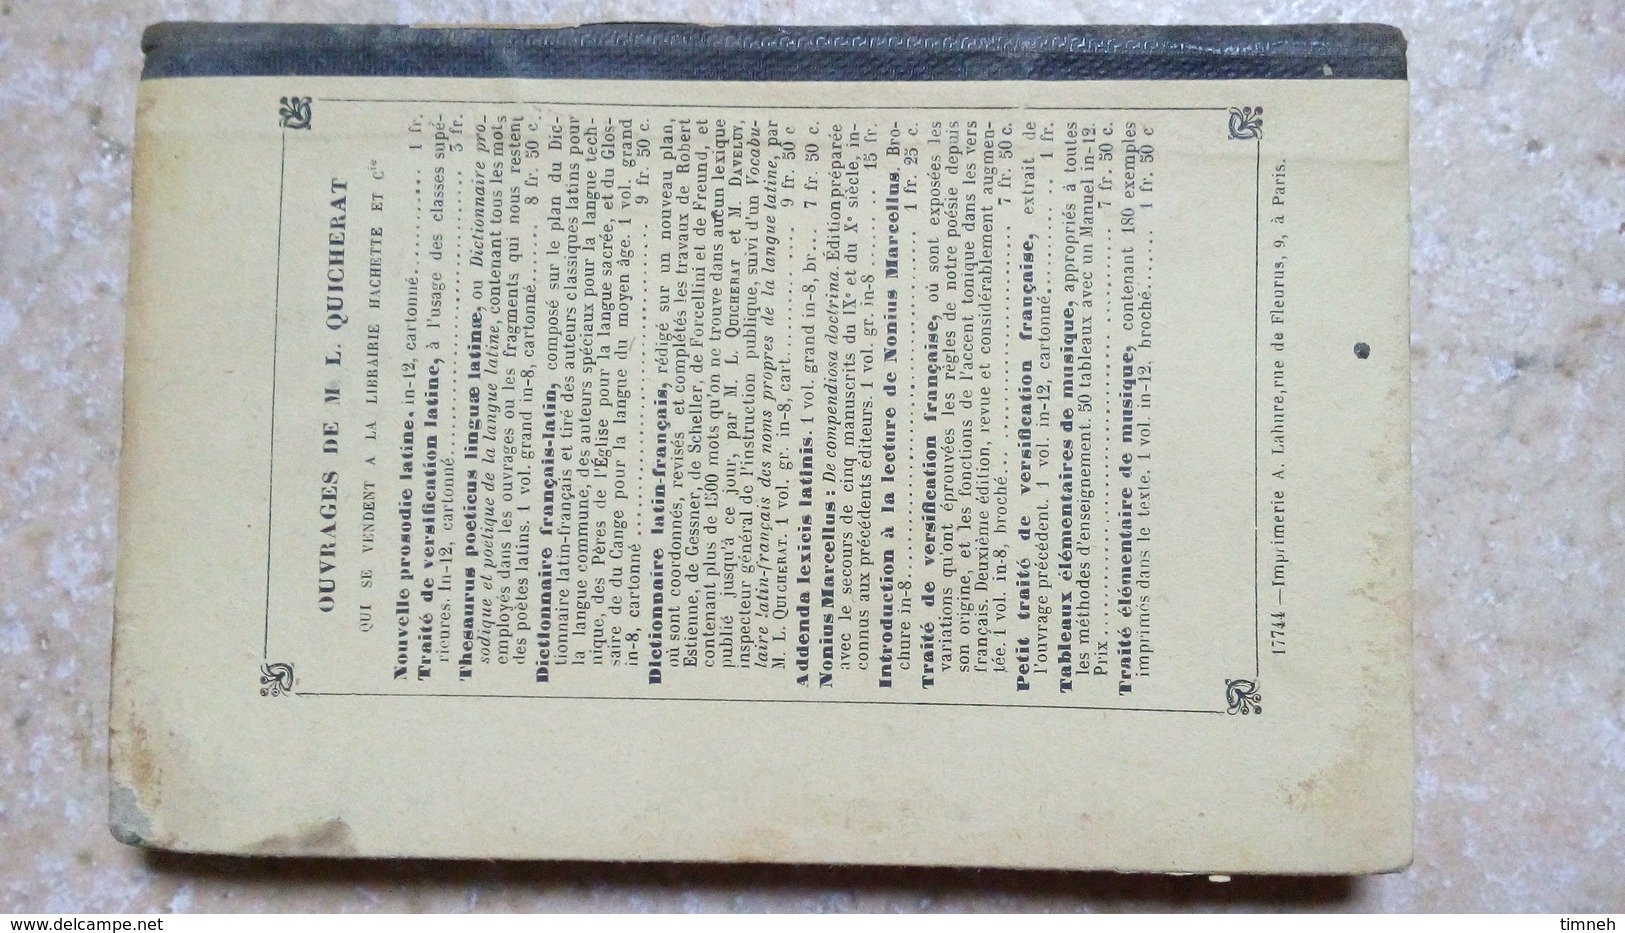 CHRESTOMATHIE ou PREMIERS EXERCICES DE TRADUCTION GRECQUE 75 pages LEXIQUE 80 pages QUICHERAT HACHETTE 12e édition 1889